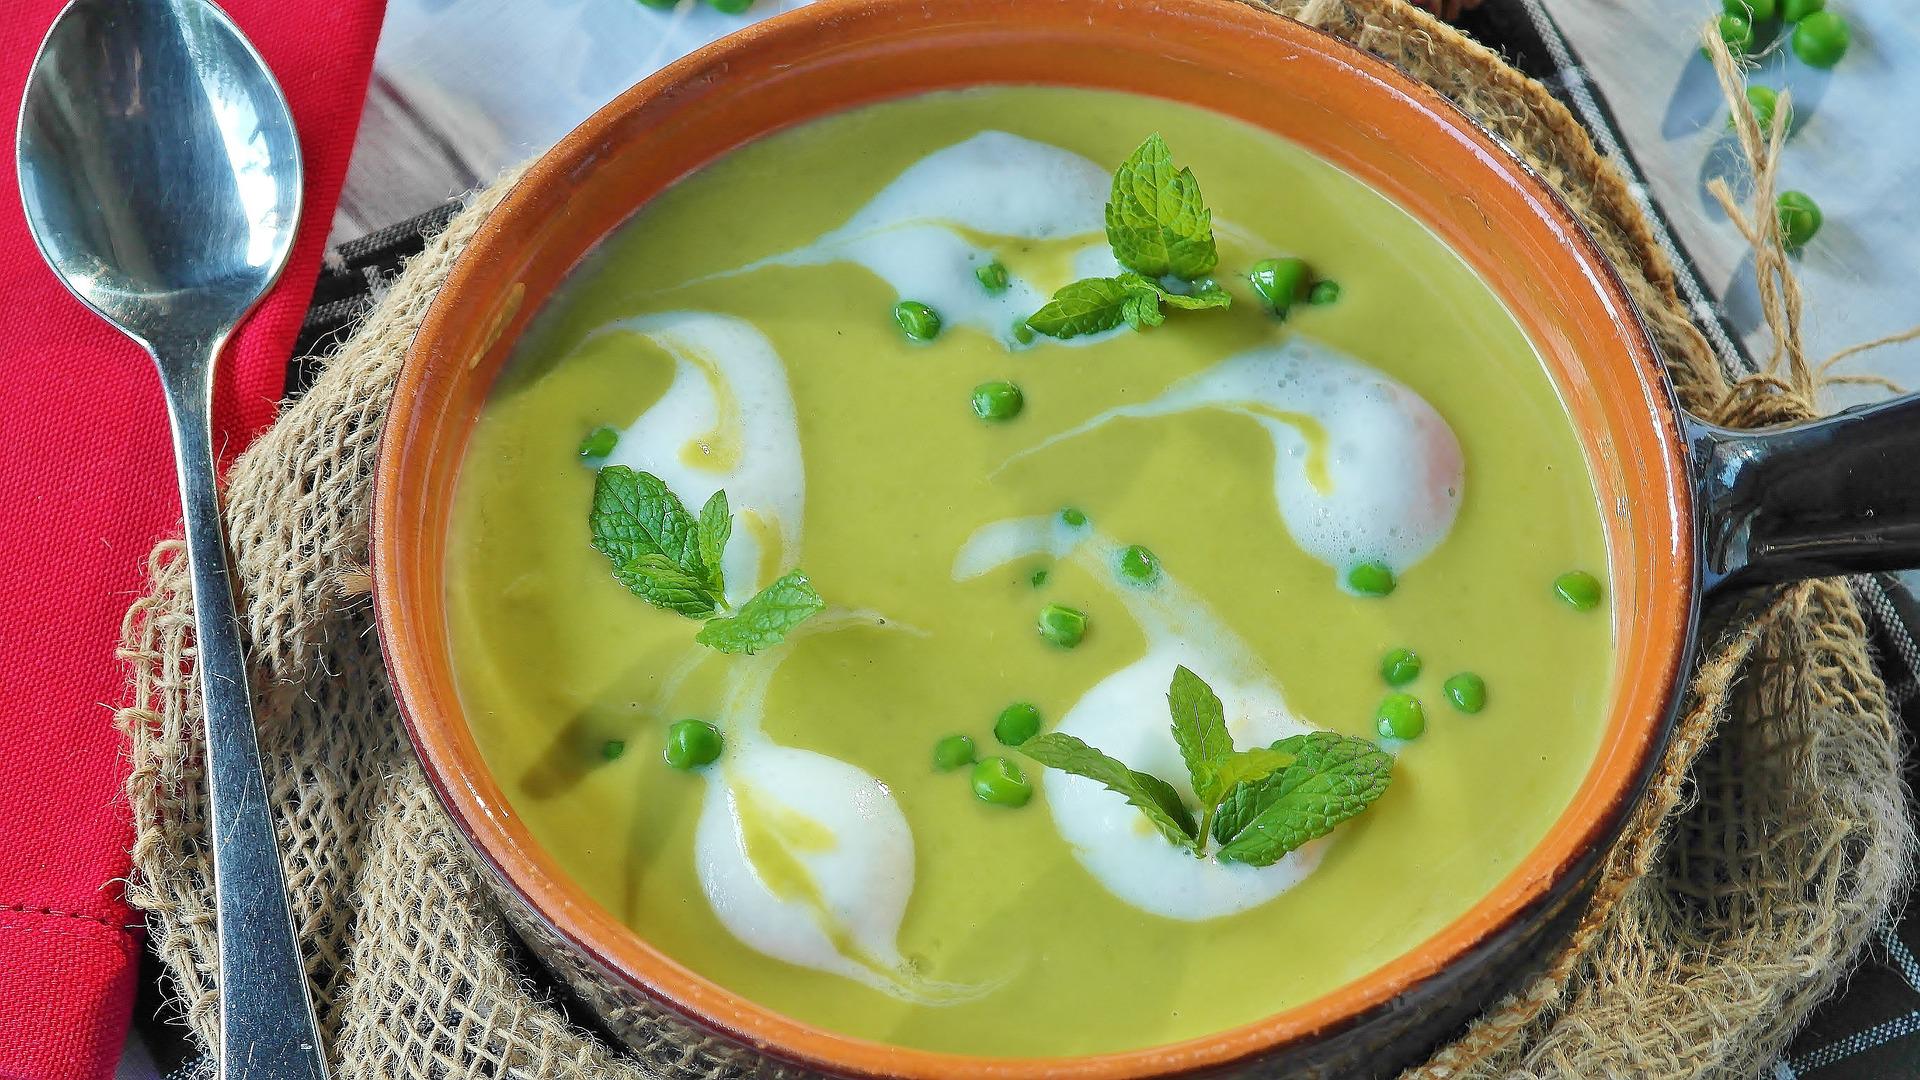 Jemná hrášková polévka svou osvěžující barvou přímo vybízí ke konzumaci v jarních měsících!